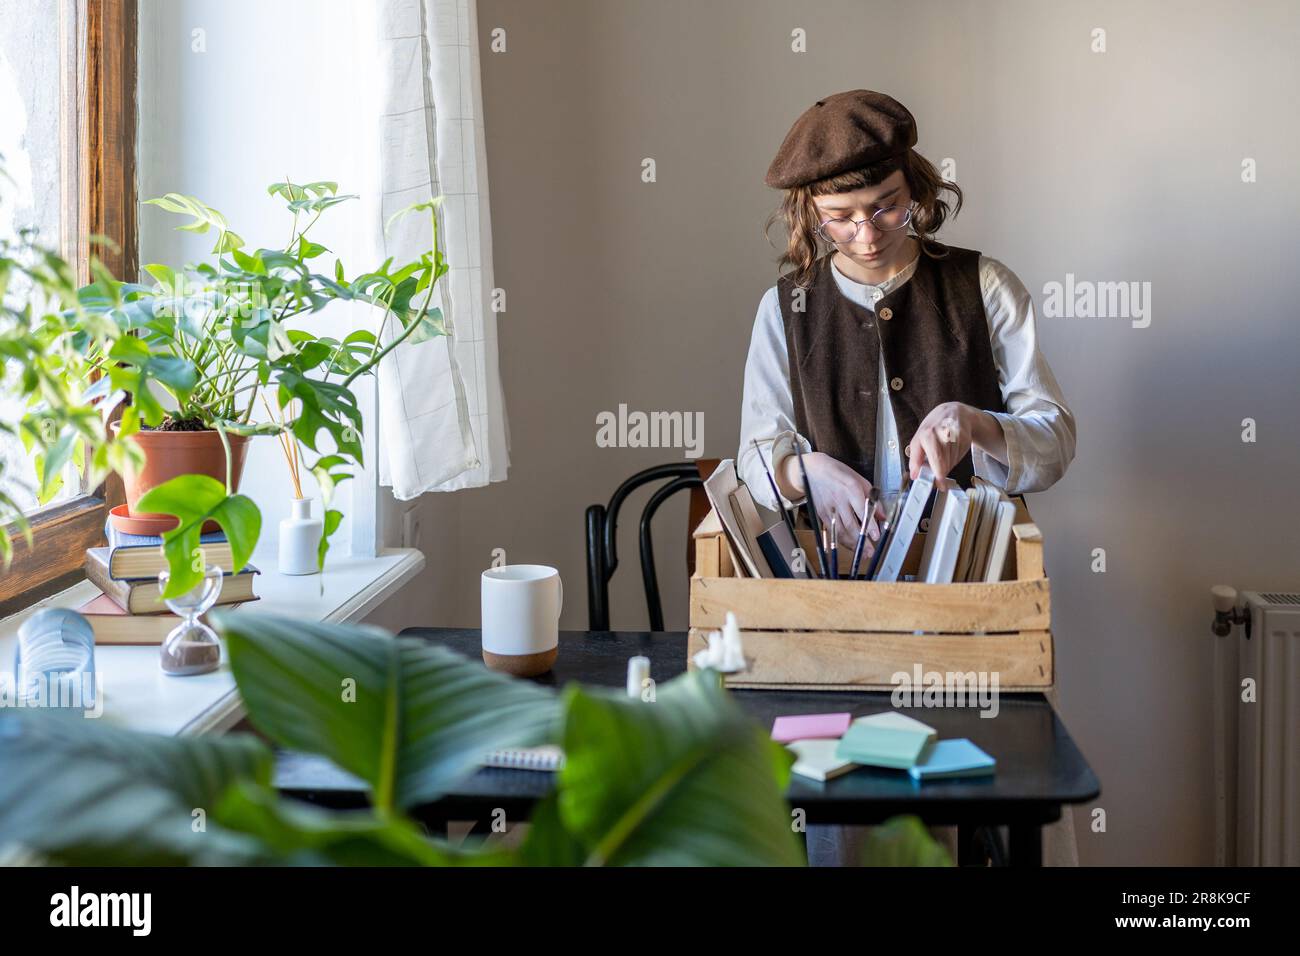 Creative hipster fille portant beret organisant des outils d'art et des matériaux de peinture Banque D'Images